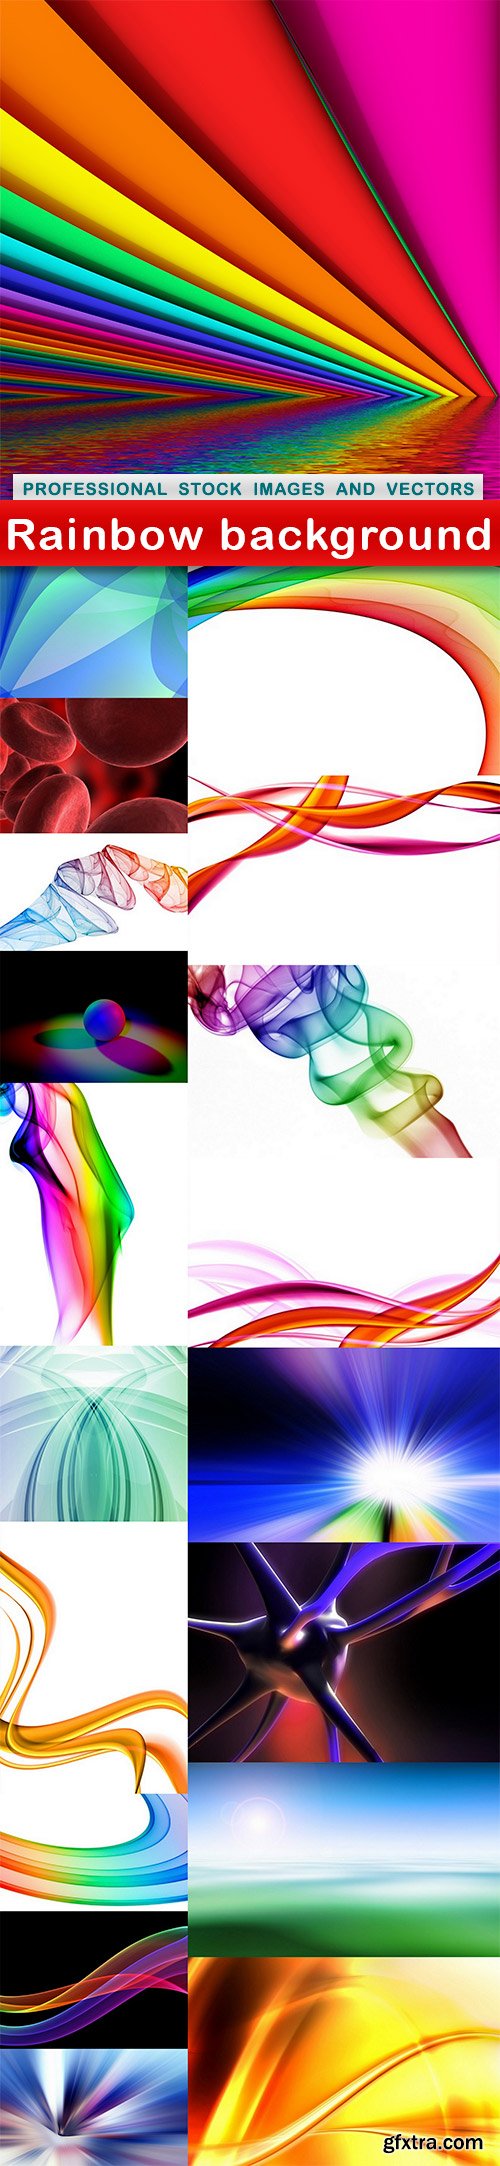 Rainbow background - 19 UHQ JPEG